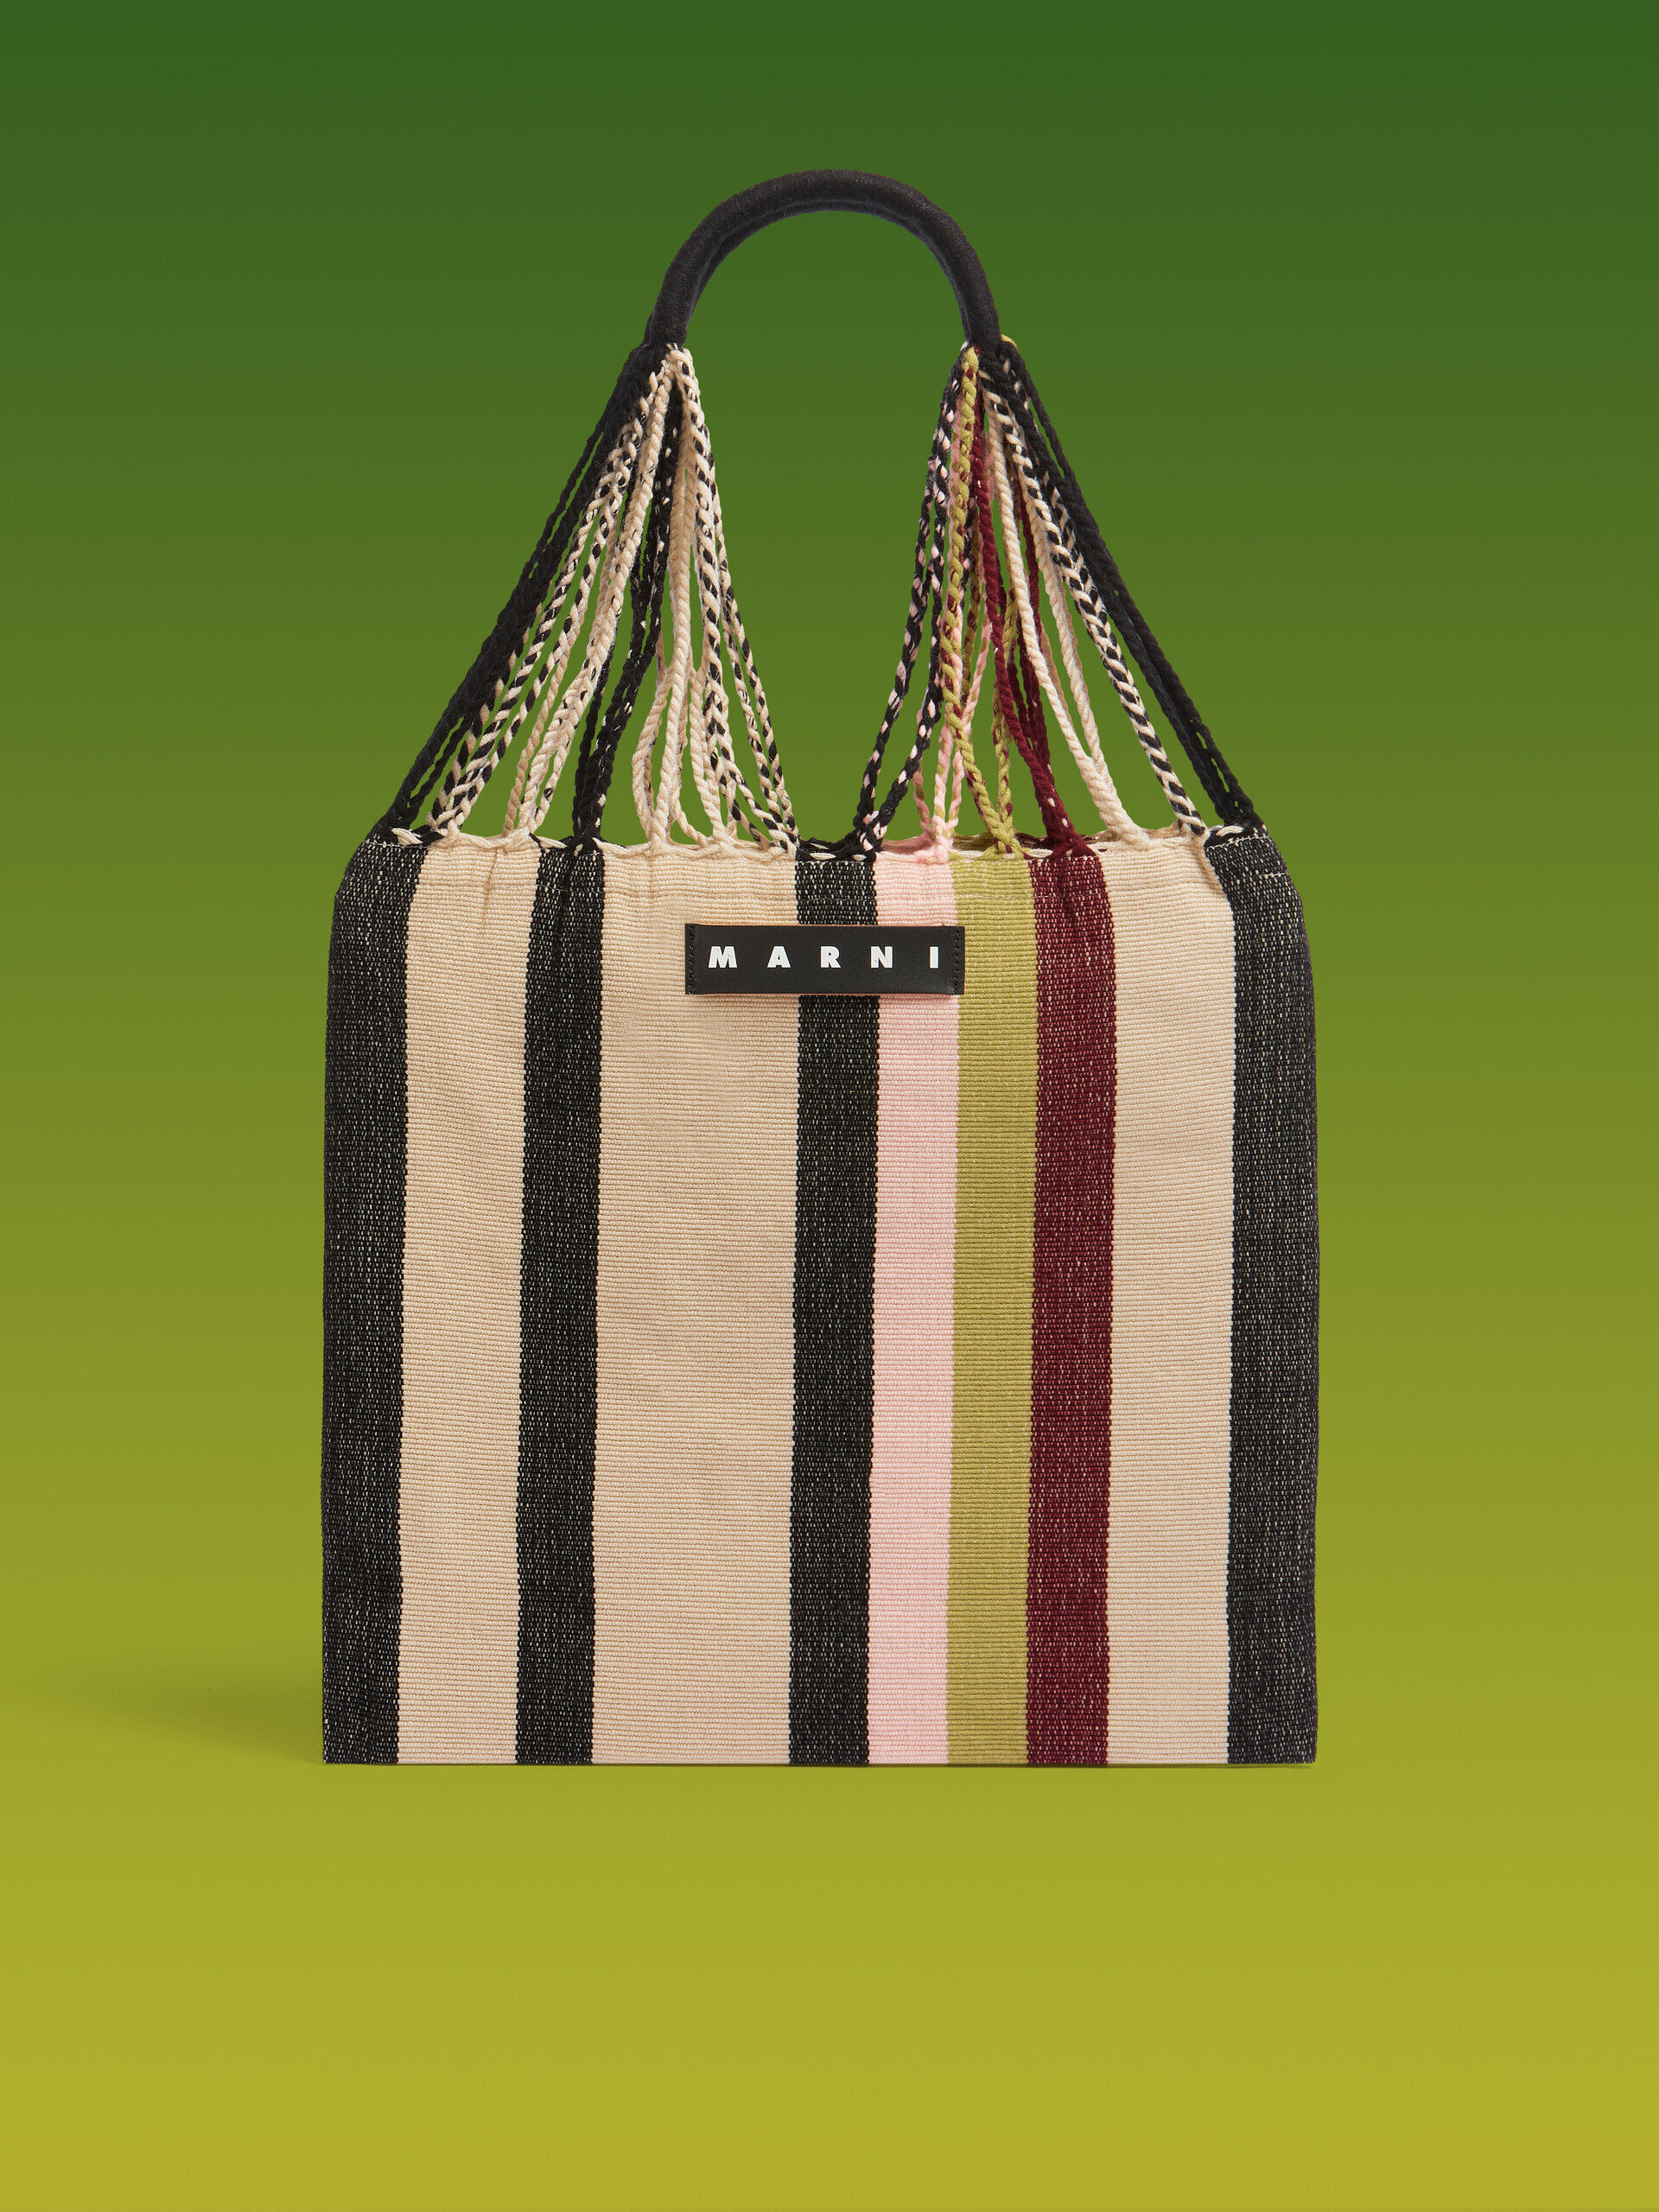 【極美品】マルニ クロシェ ハンモック トートバッグ マルチカラー 保存袋さざえブランド